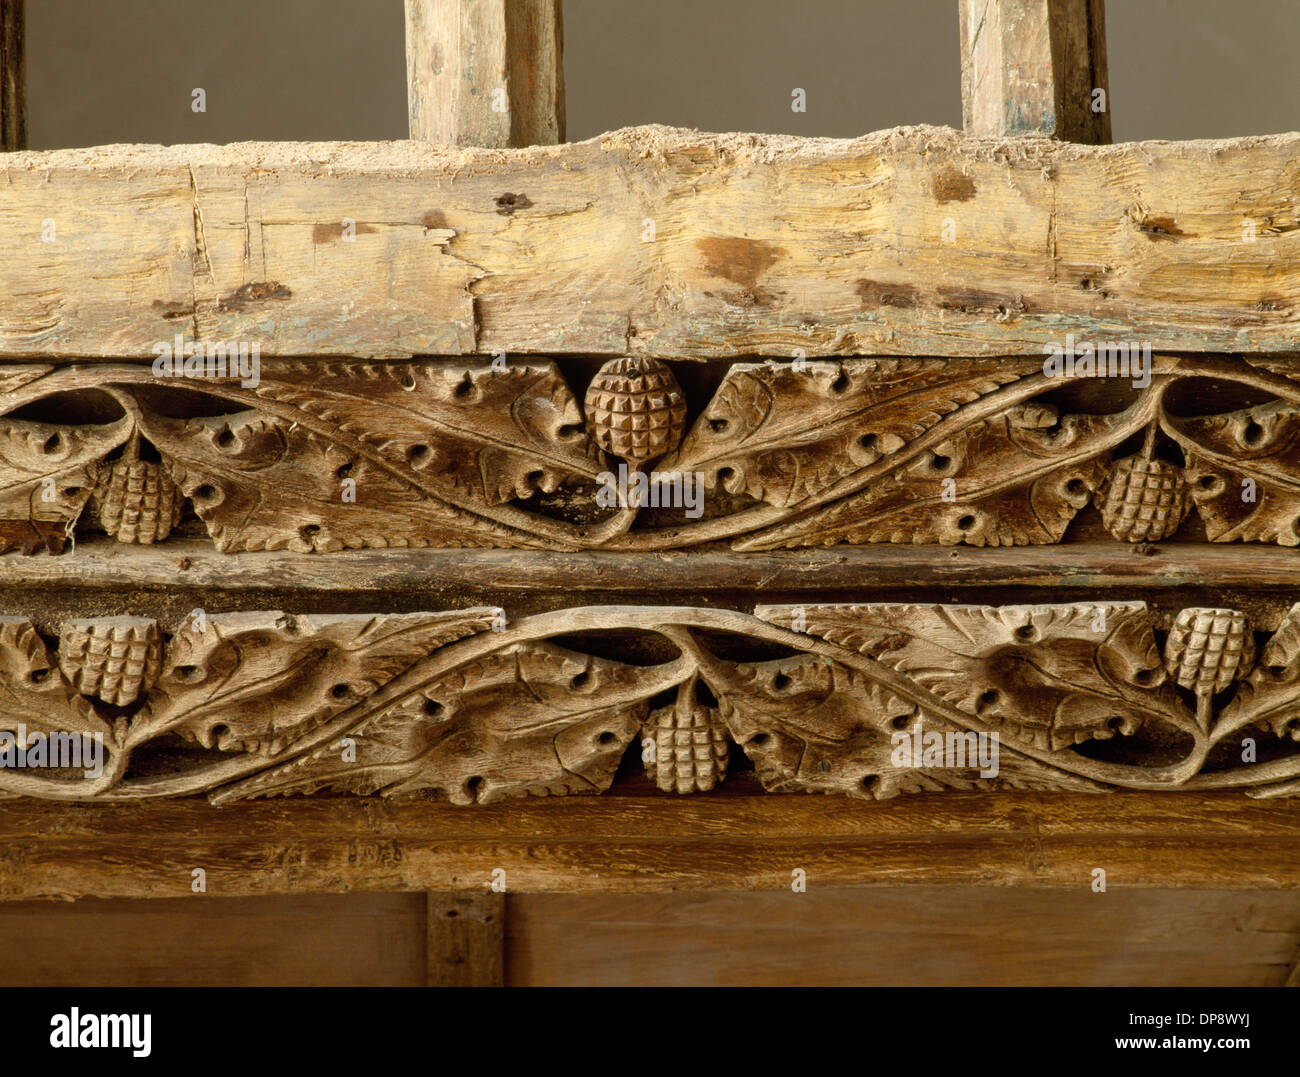 Detalle de la vid perforada se desplaza en viga de roble entre el rood loft y pantalla (1495) en la iglesia de St Eilian Llaneilian, Anglesey. El simbolismo Cristiano. Foto de stock